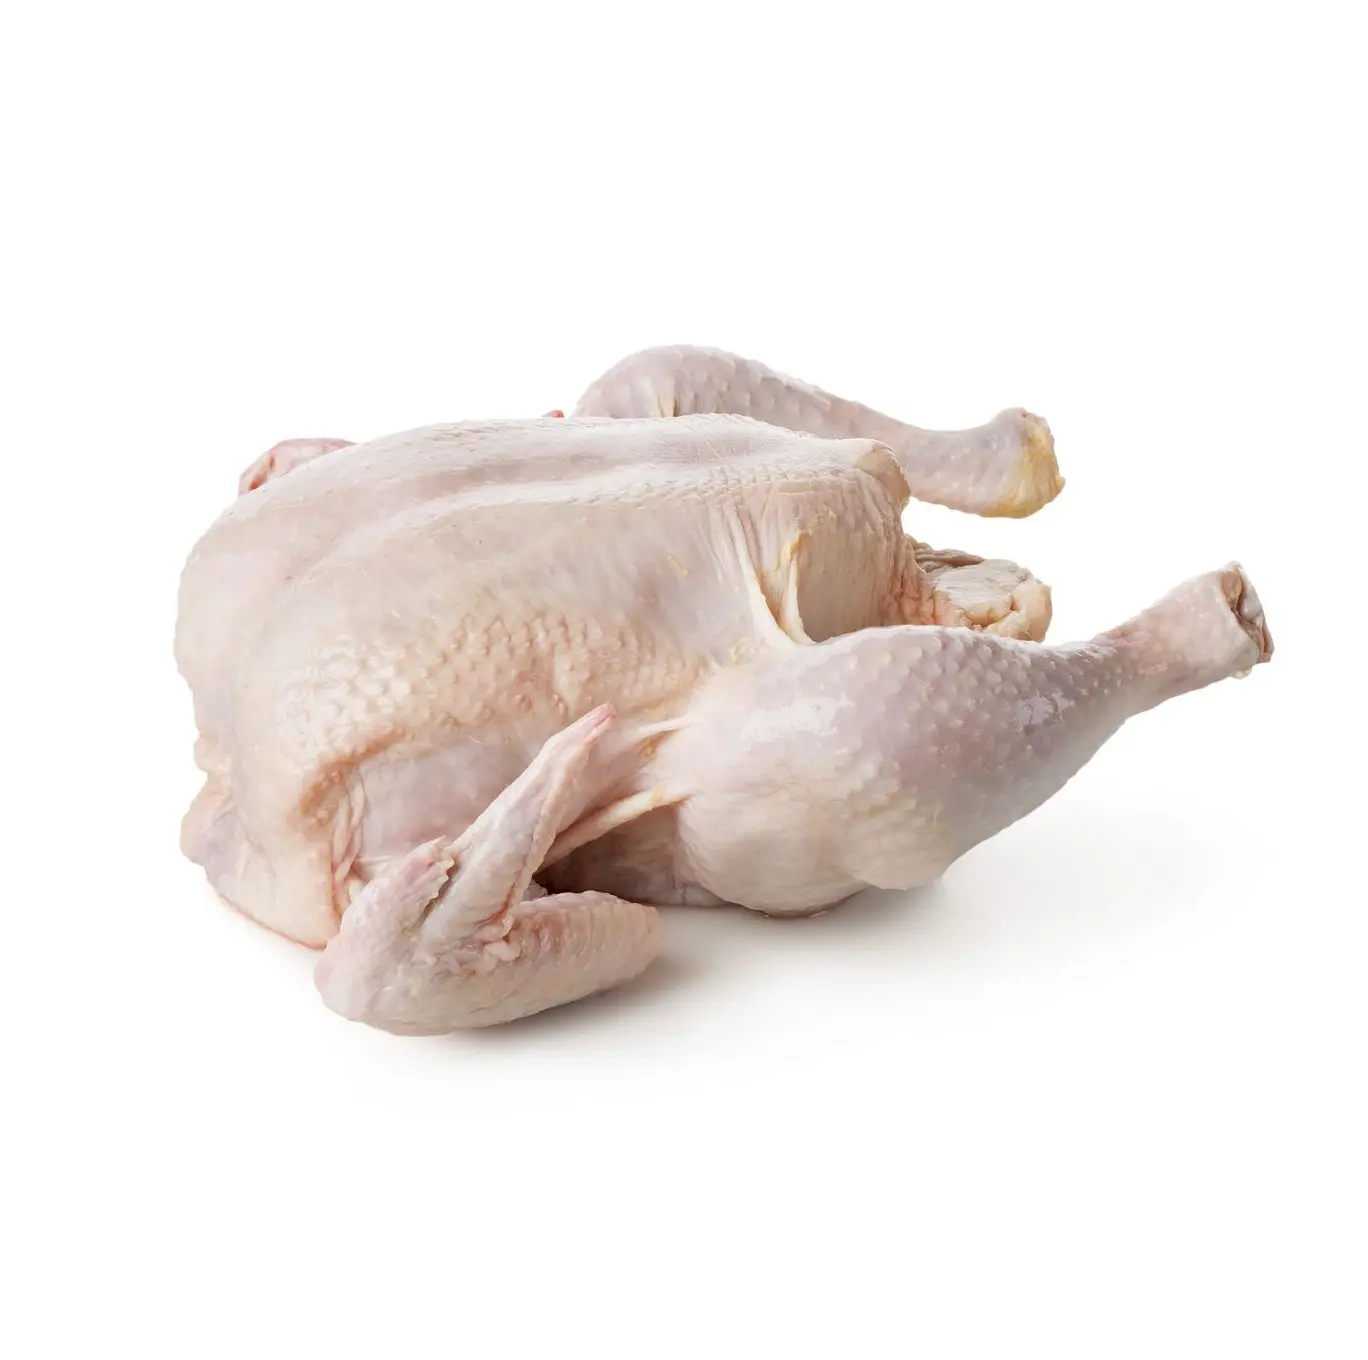 Whole Chicken Frozen / Halal Chicken Feet / Frozen Chicken Paws Brazil